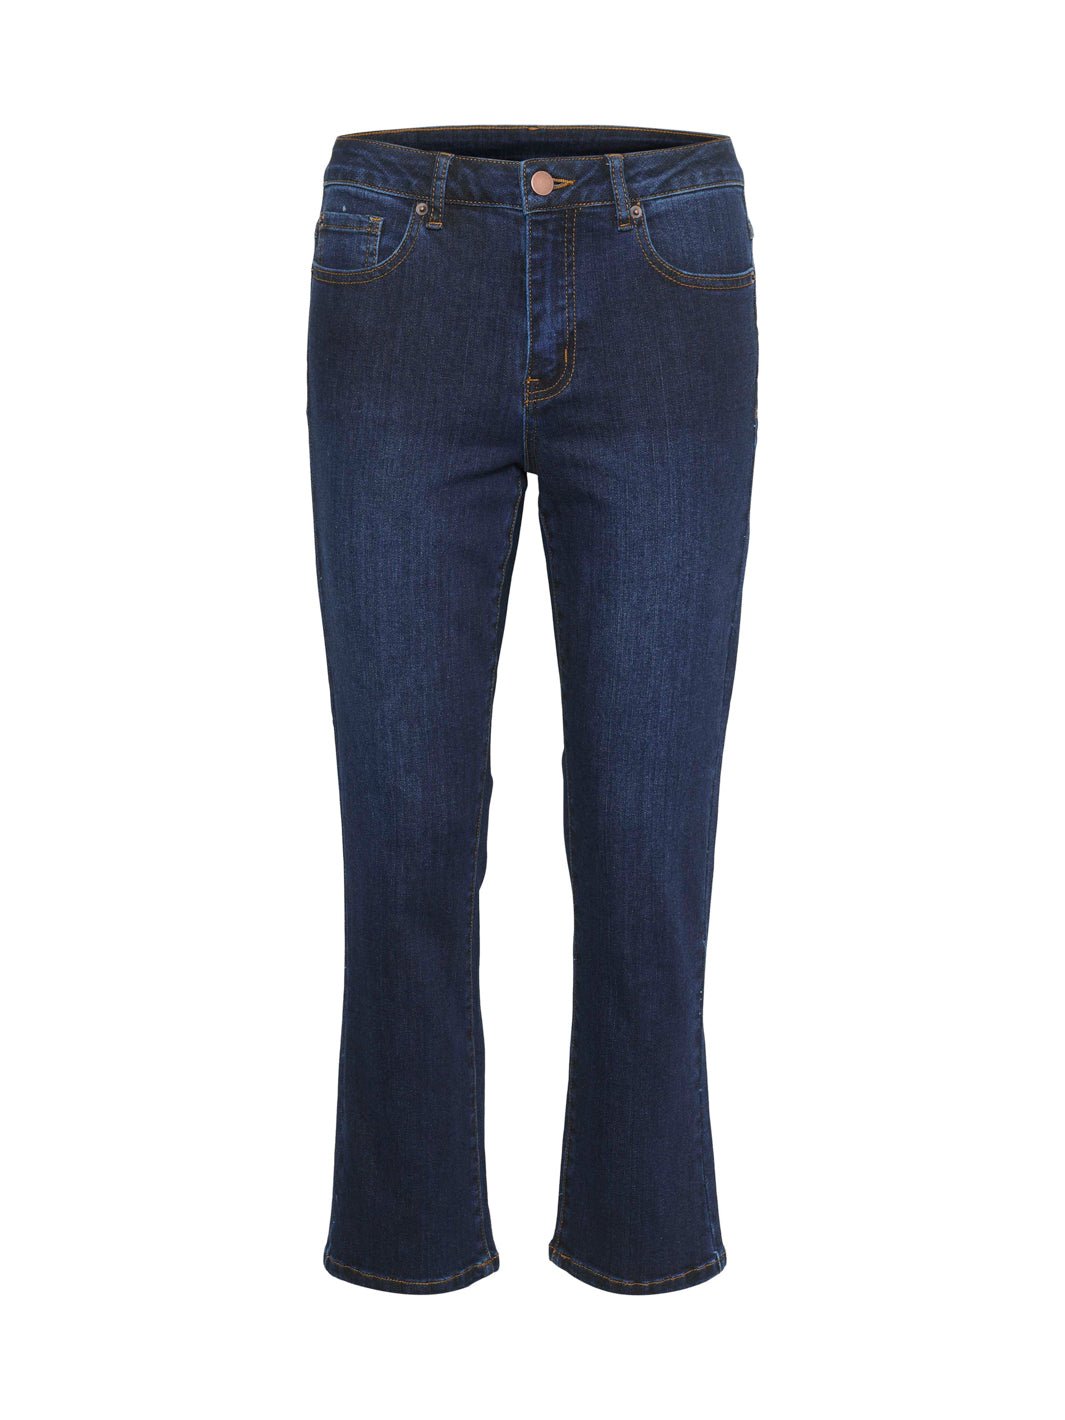 Lev. 5-7 dg. Kaffe KAsinem jeans cropped dark blue denim - Online-Mode